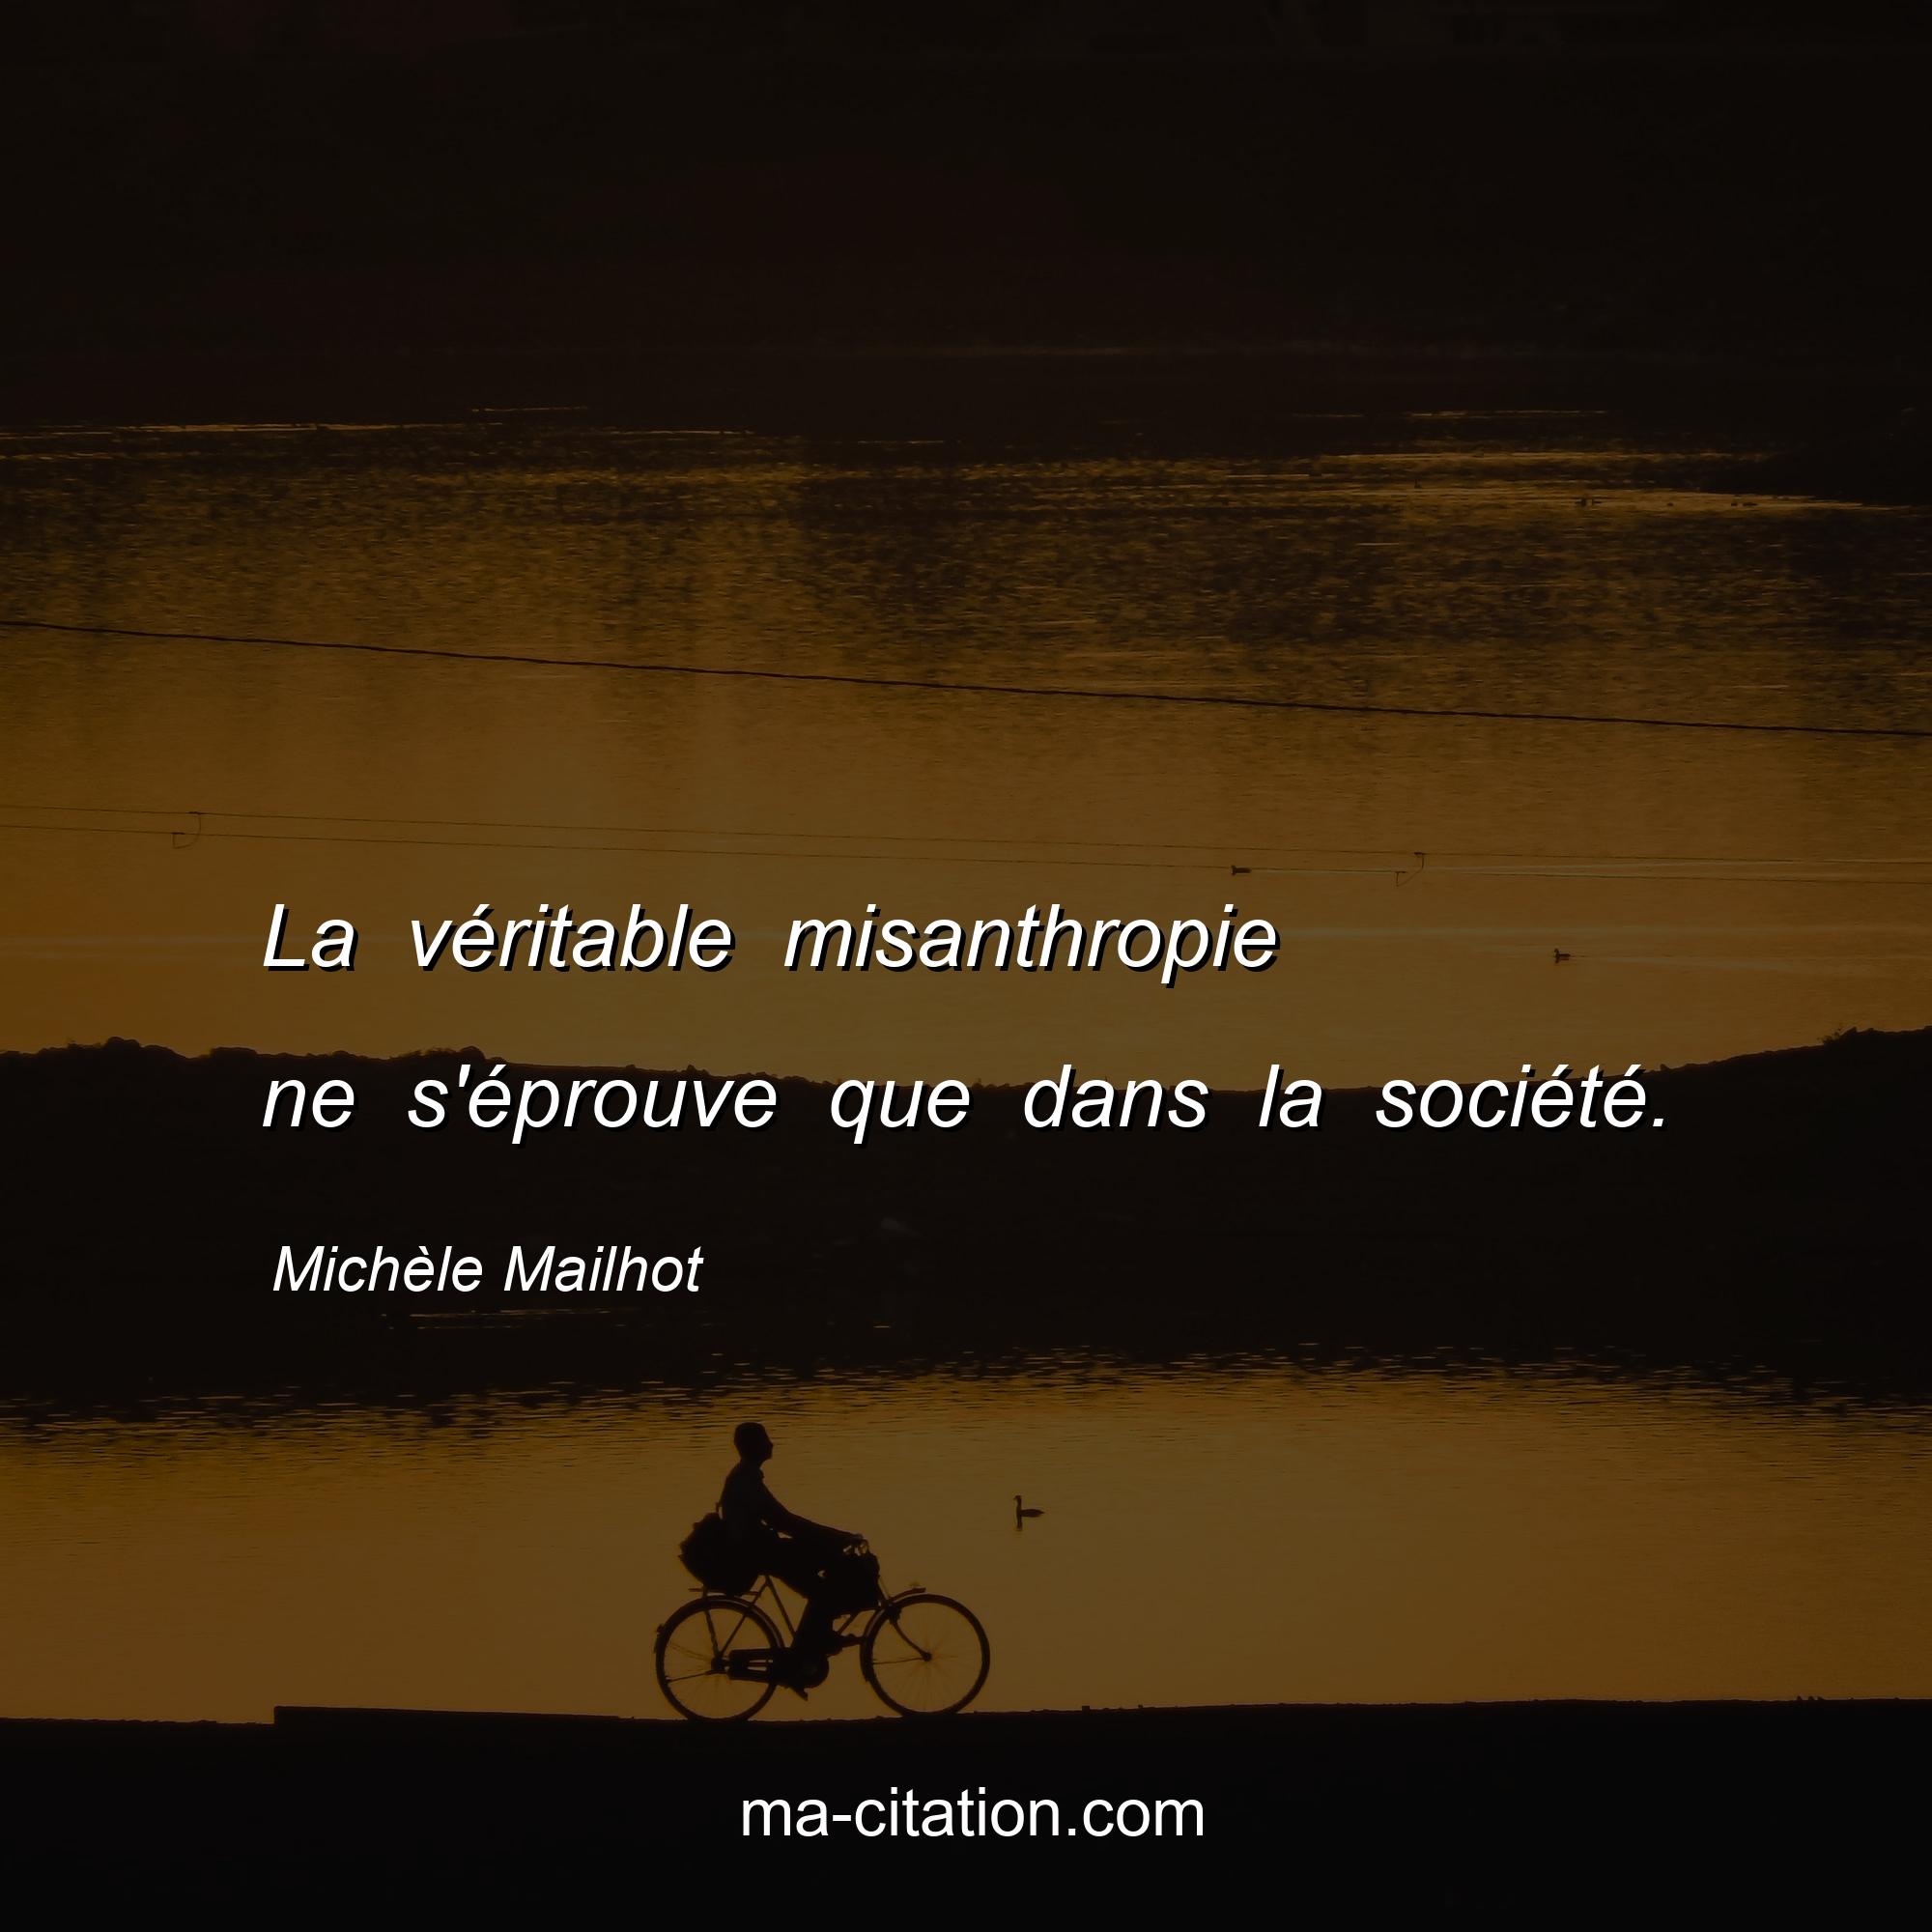 Michèle Mailhot : La véritable misanthropie ne s'éprouve que dans la société.